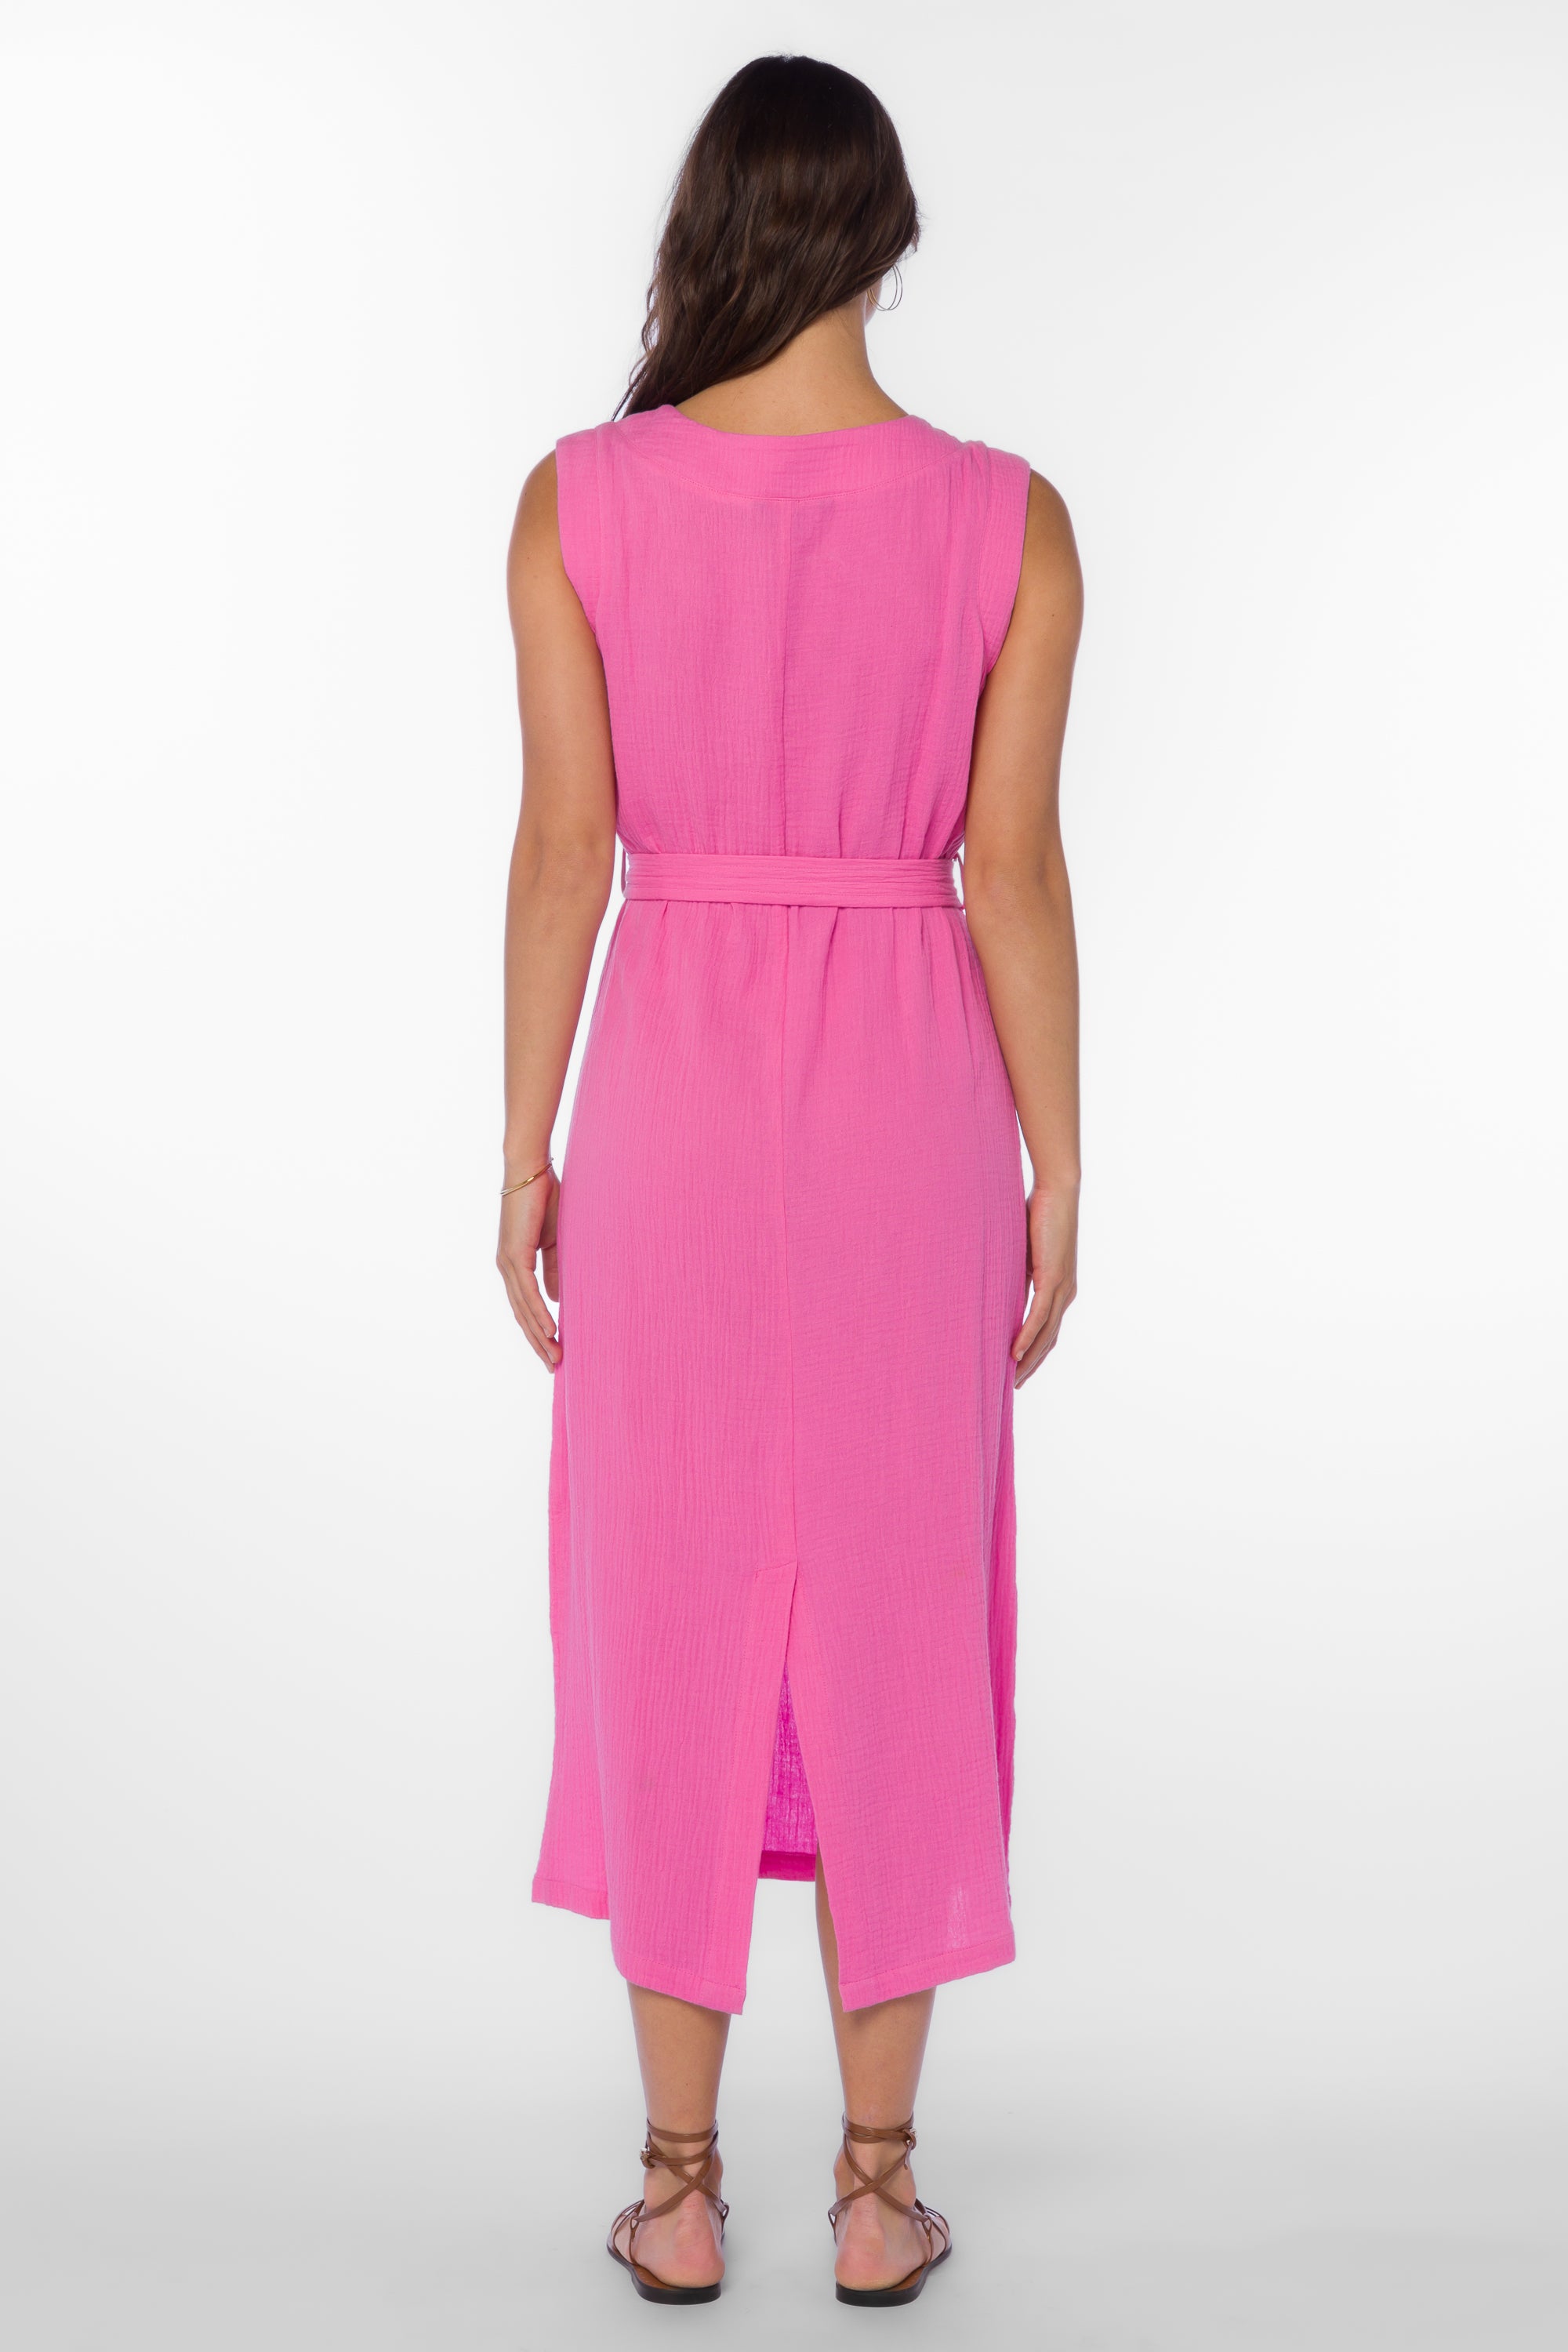 Aurelie Bright Pink Dress